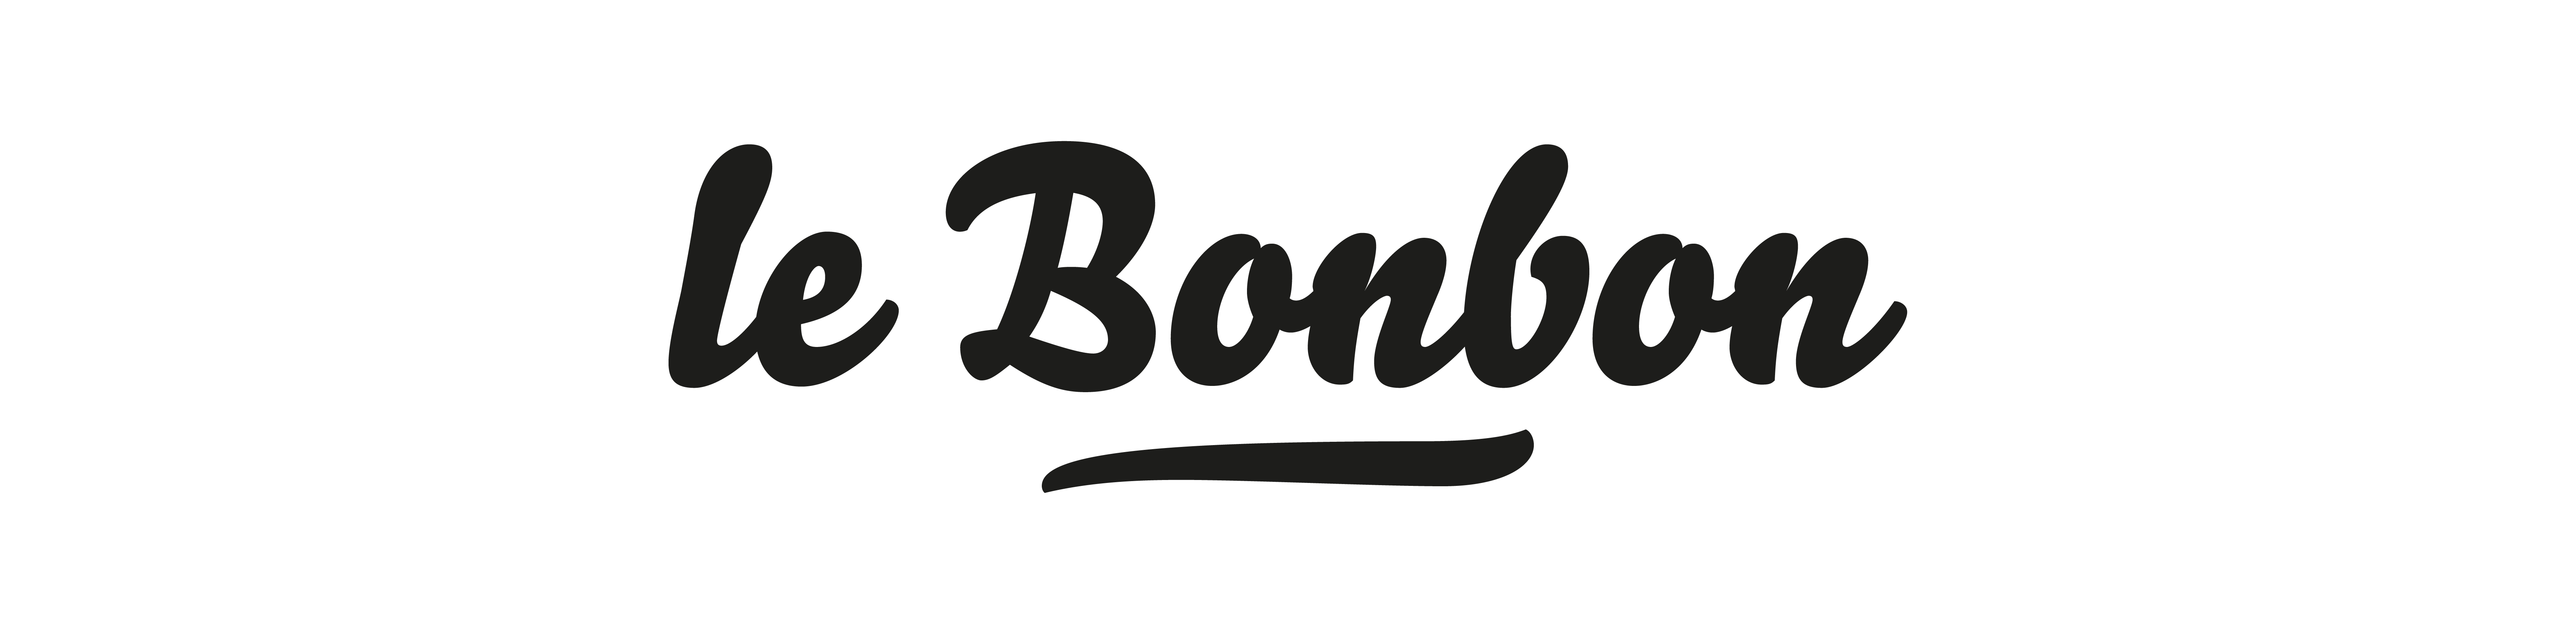 Logo Le bonbon